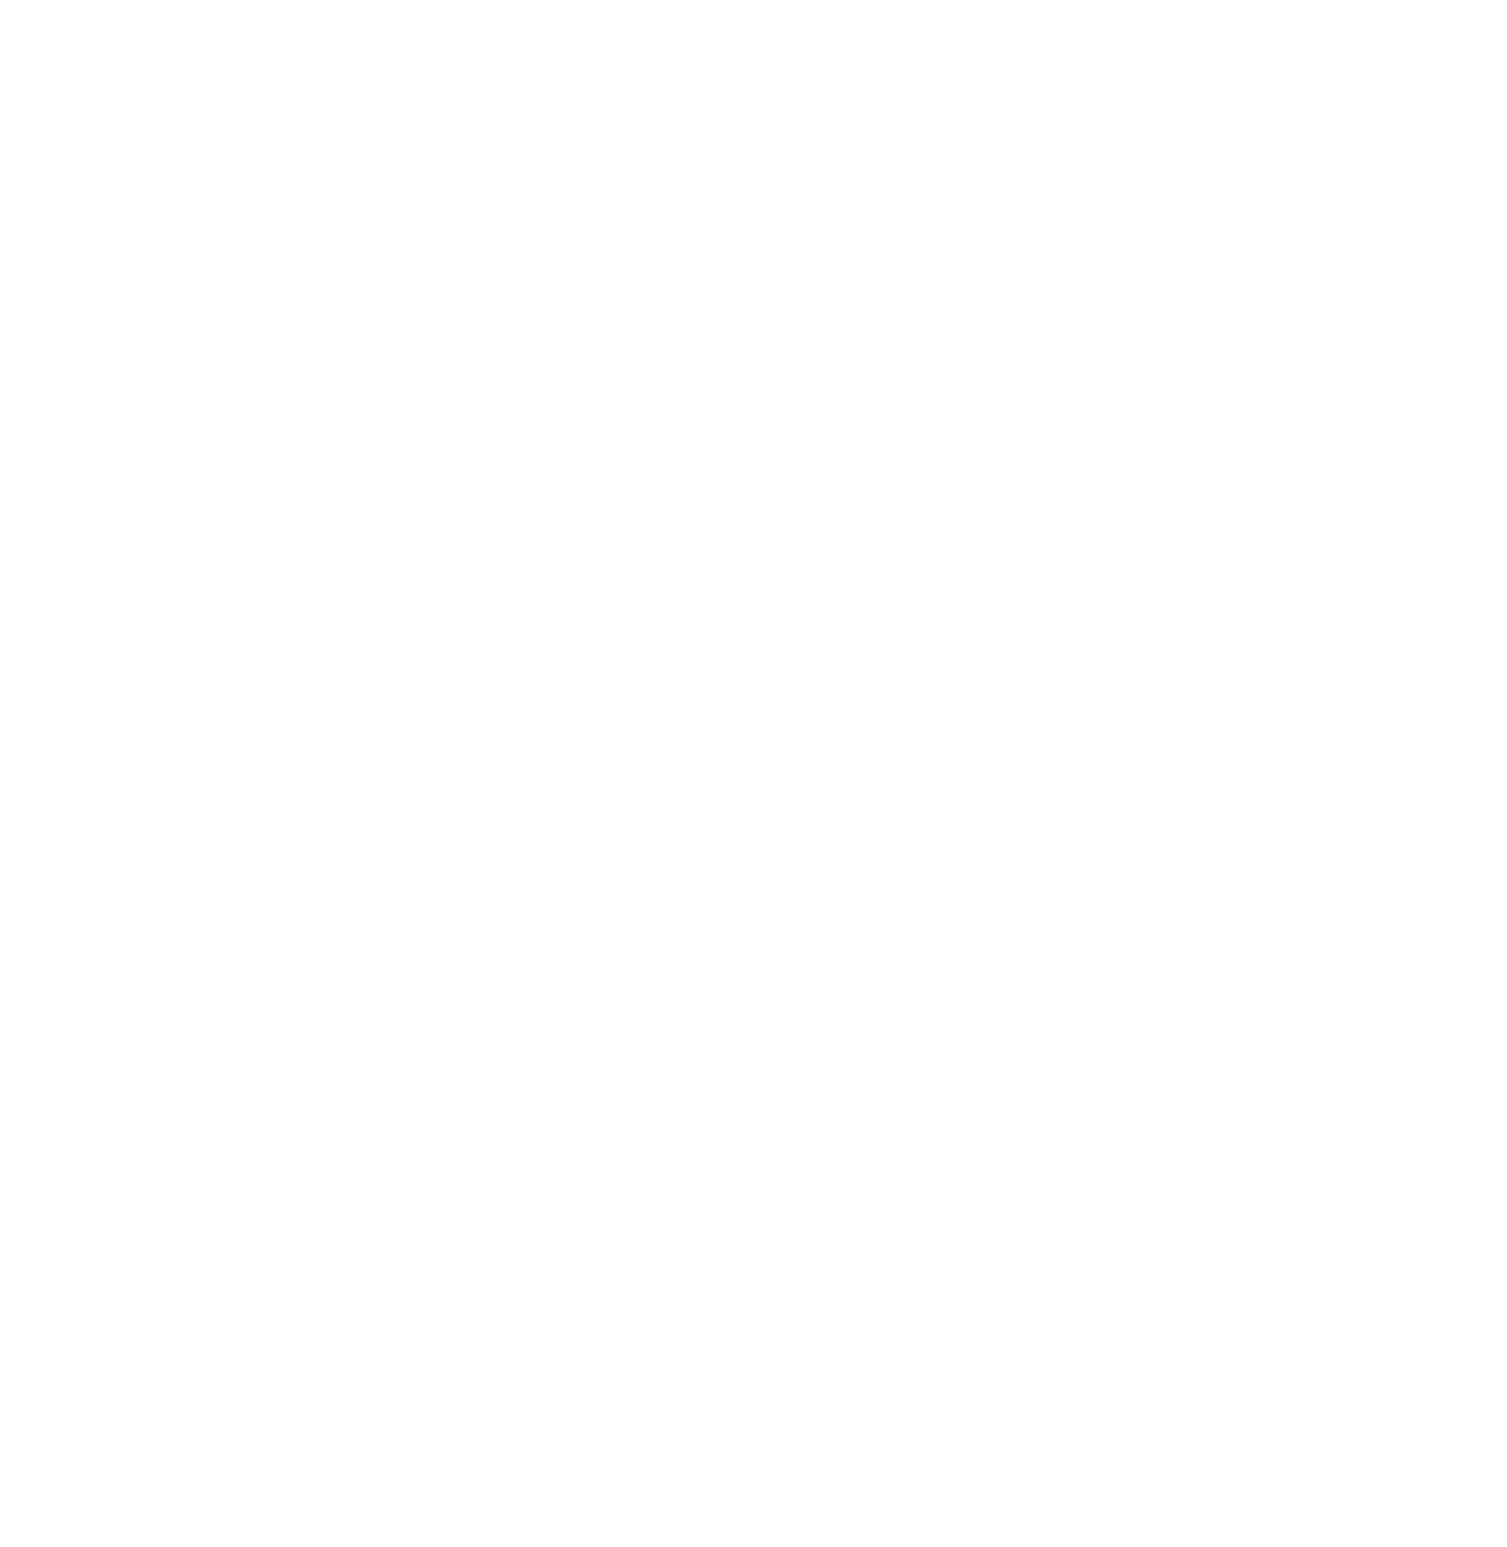 Dufry logo pour fonds sombres (PNG transparent)